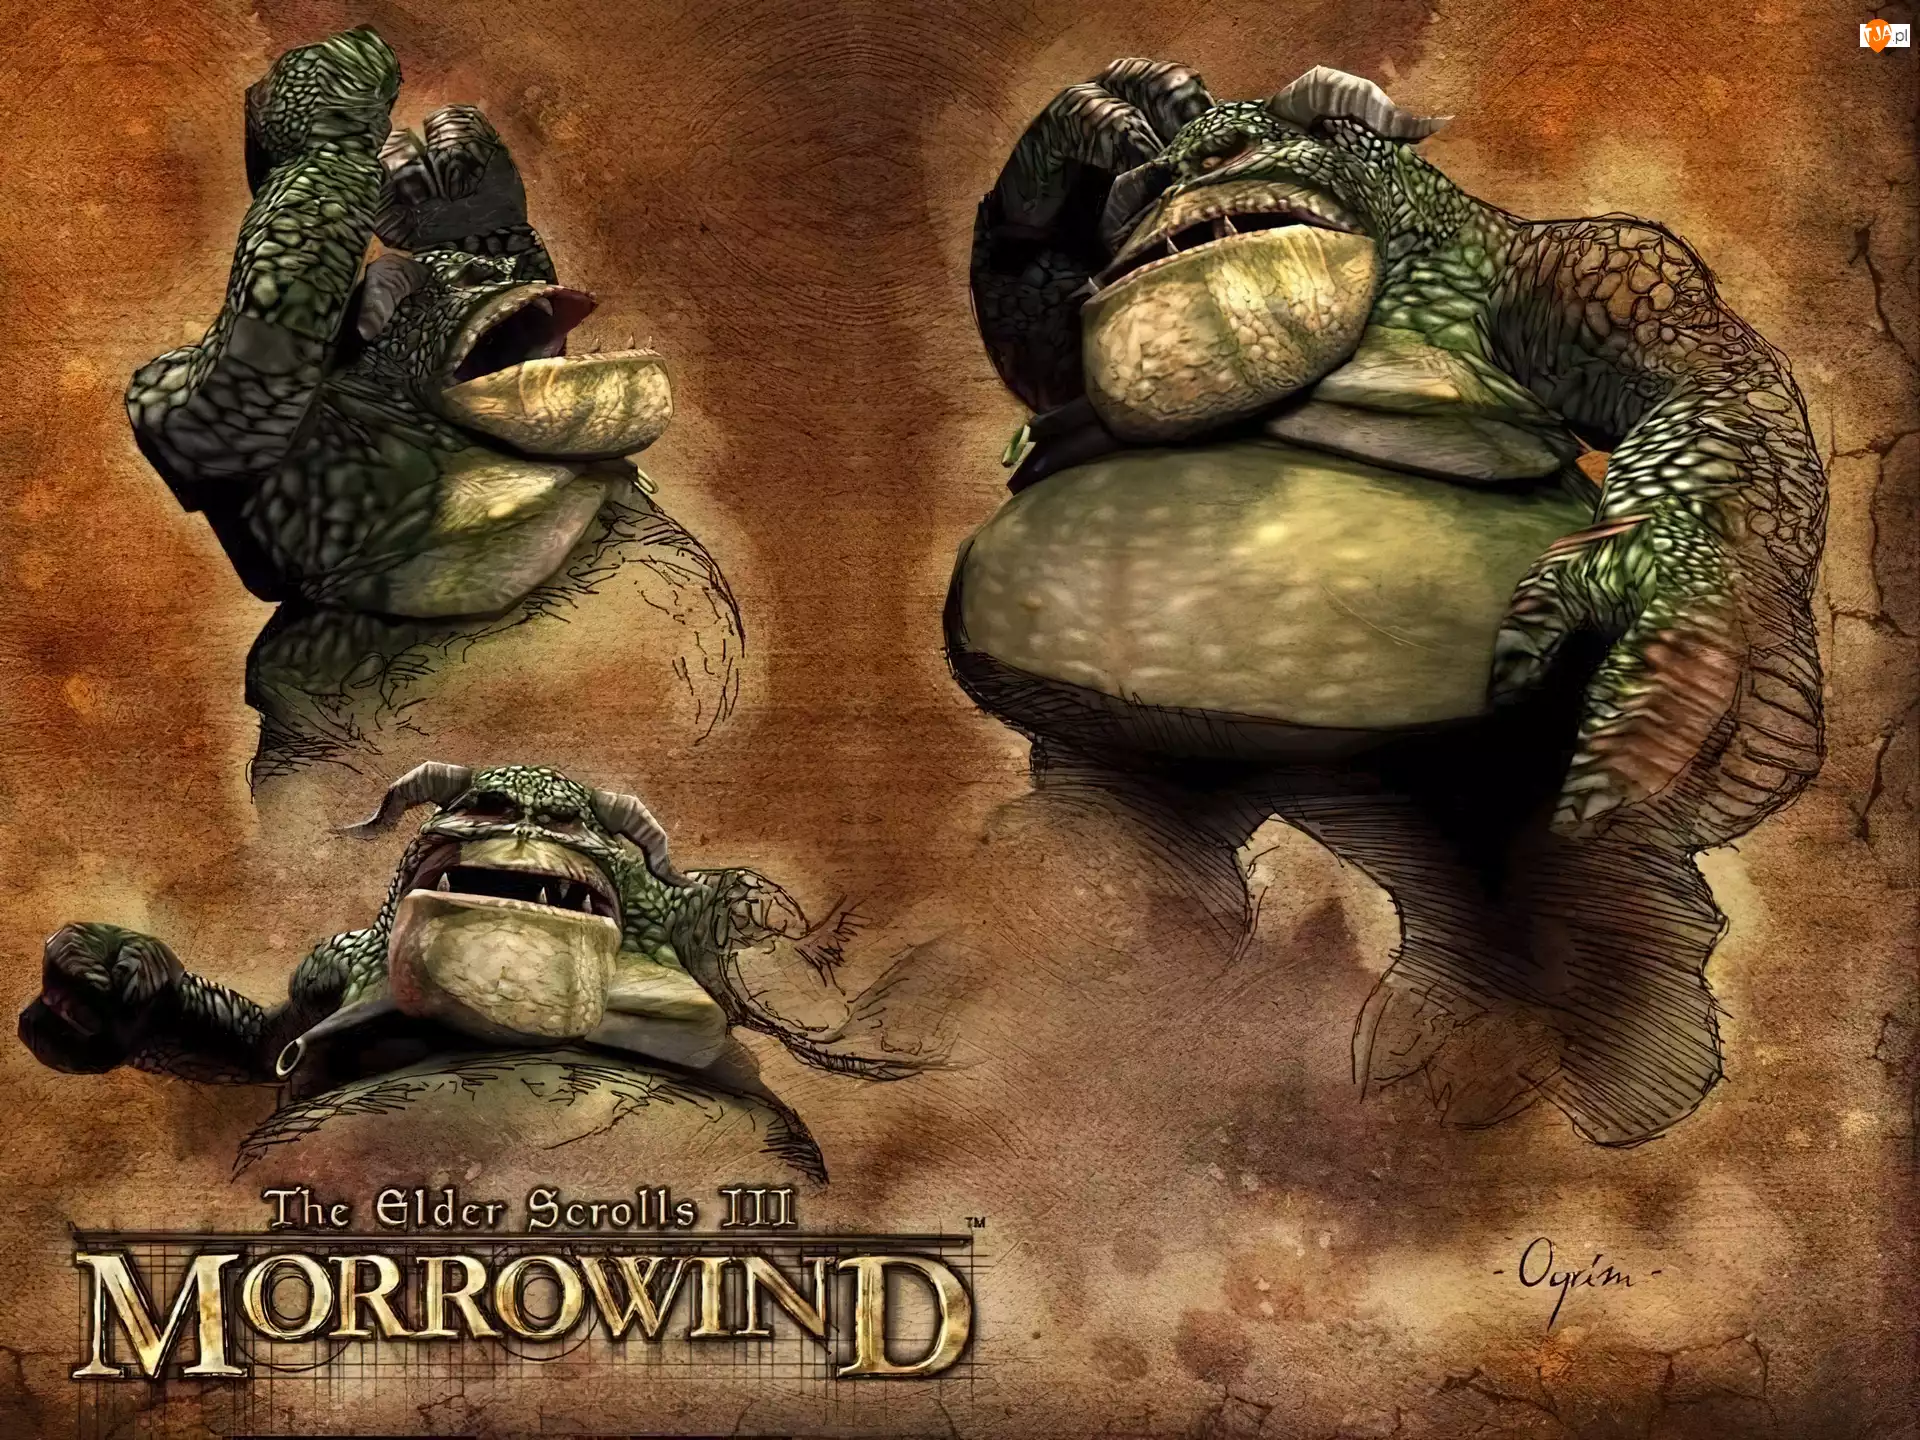 The Elder Scrolls III: Morrowind, Screen